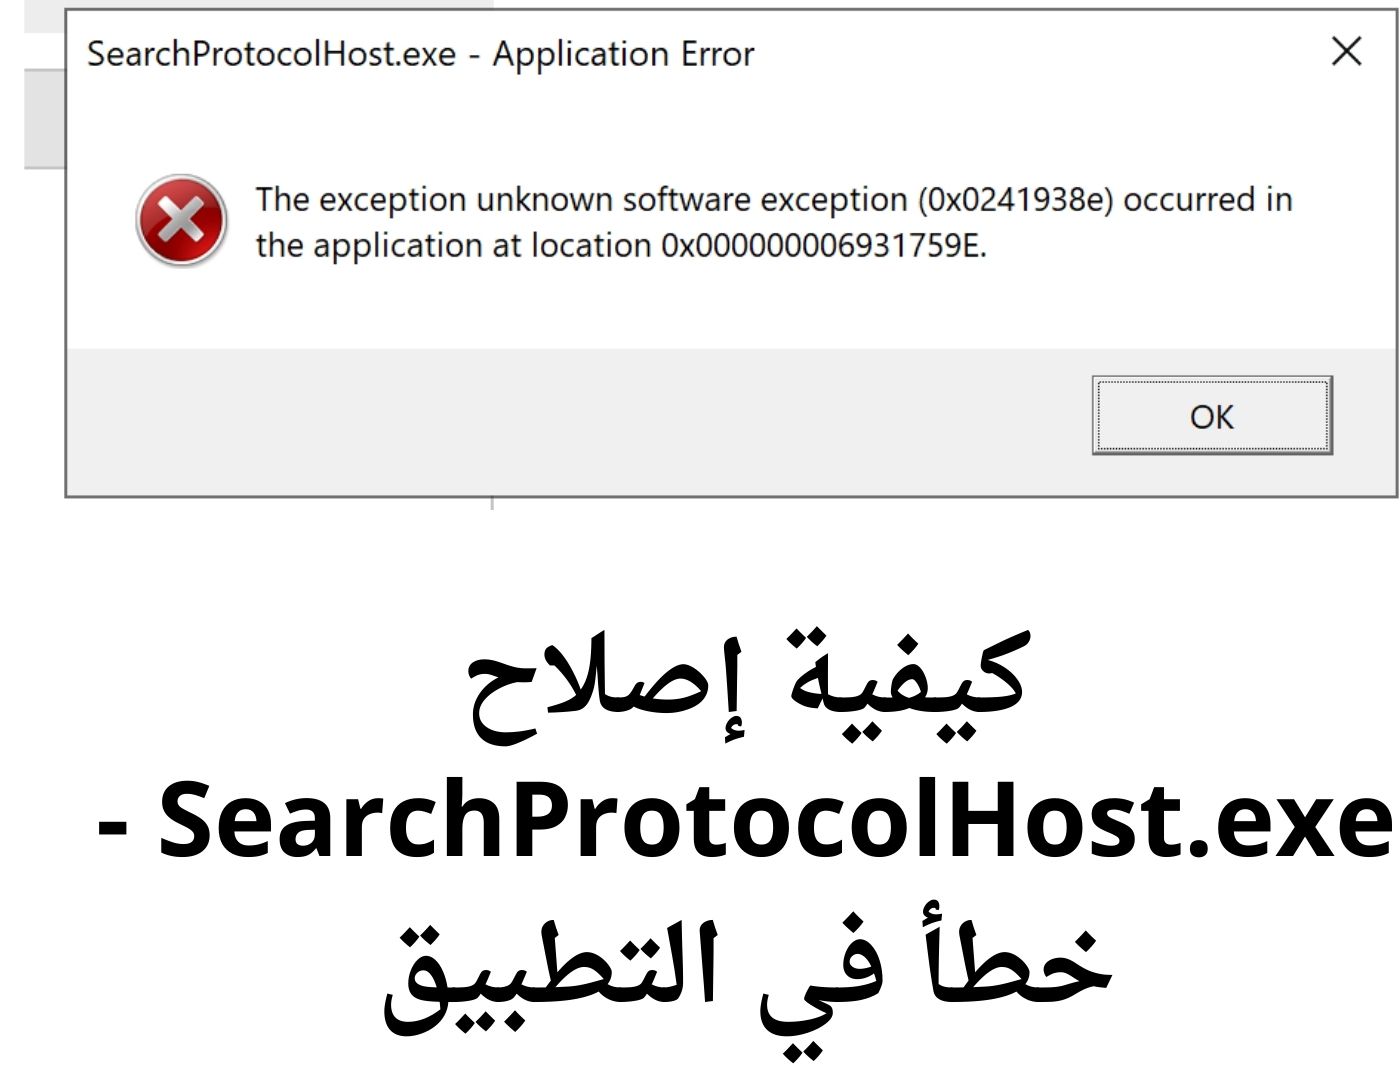 صورة لرسالة SearchProtocolHost.exe - خطأ في التطبيق